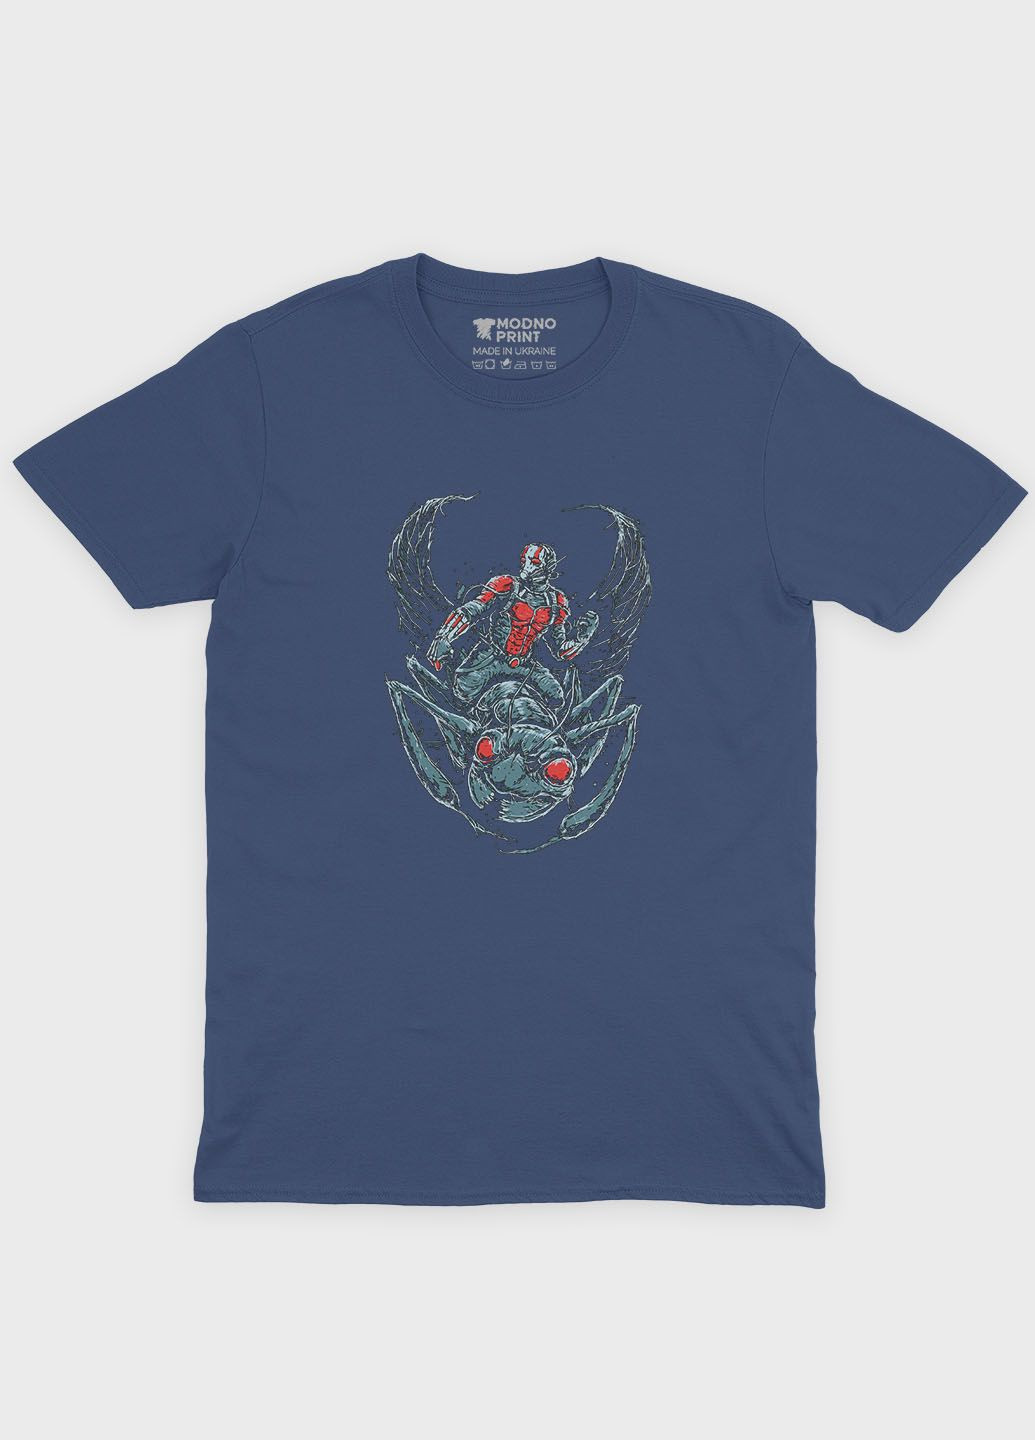 Темно-синяя демисезонная футболка для мальчика с принтом супергероя - человек муравей (ts001-1-nav-006-026-001-b) Modno